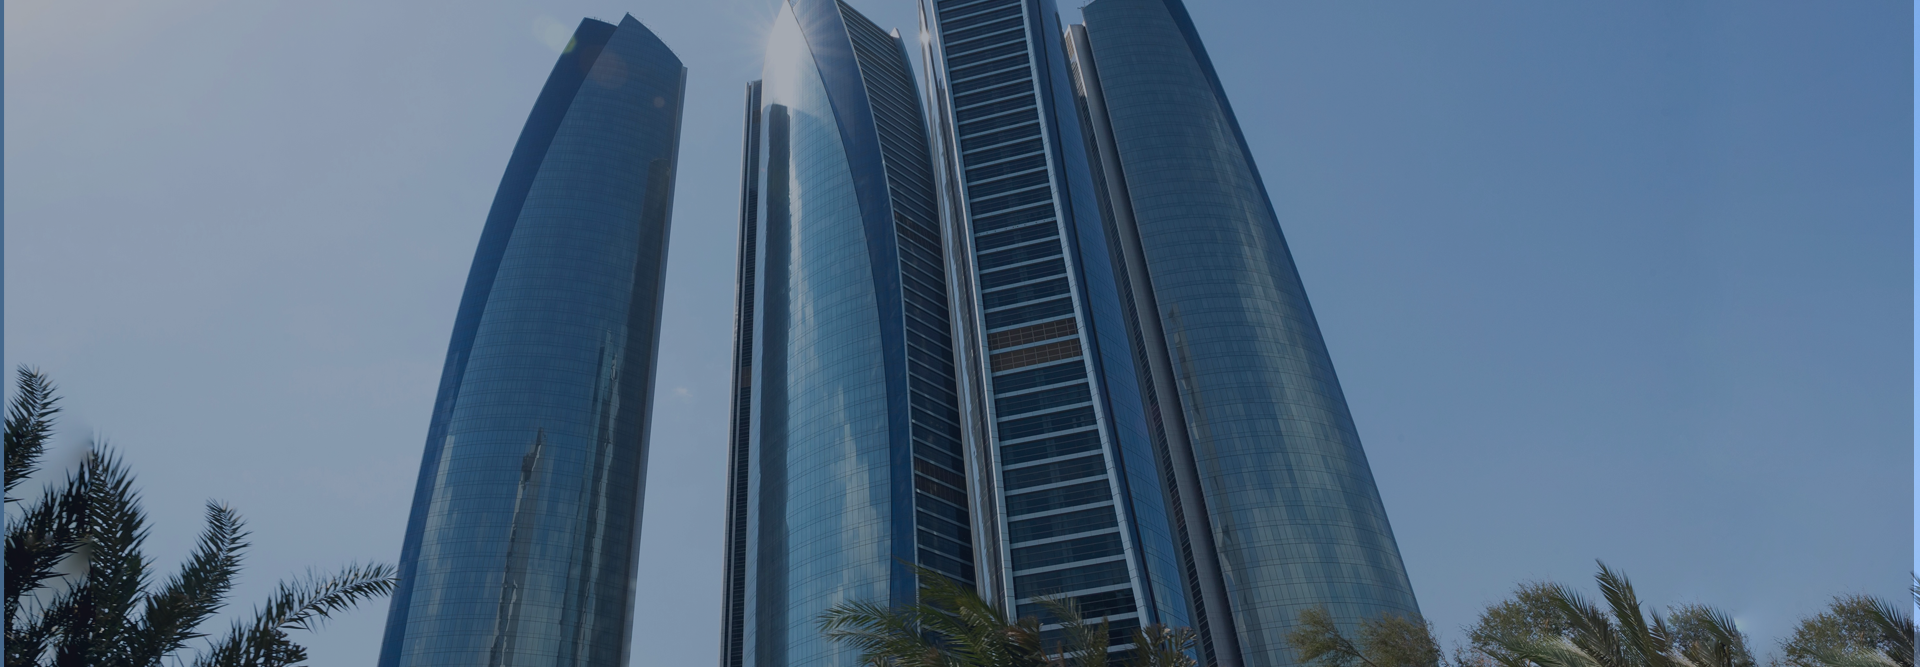 Grattacieli a Abu Dhabi